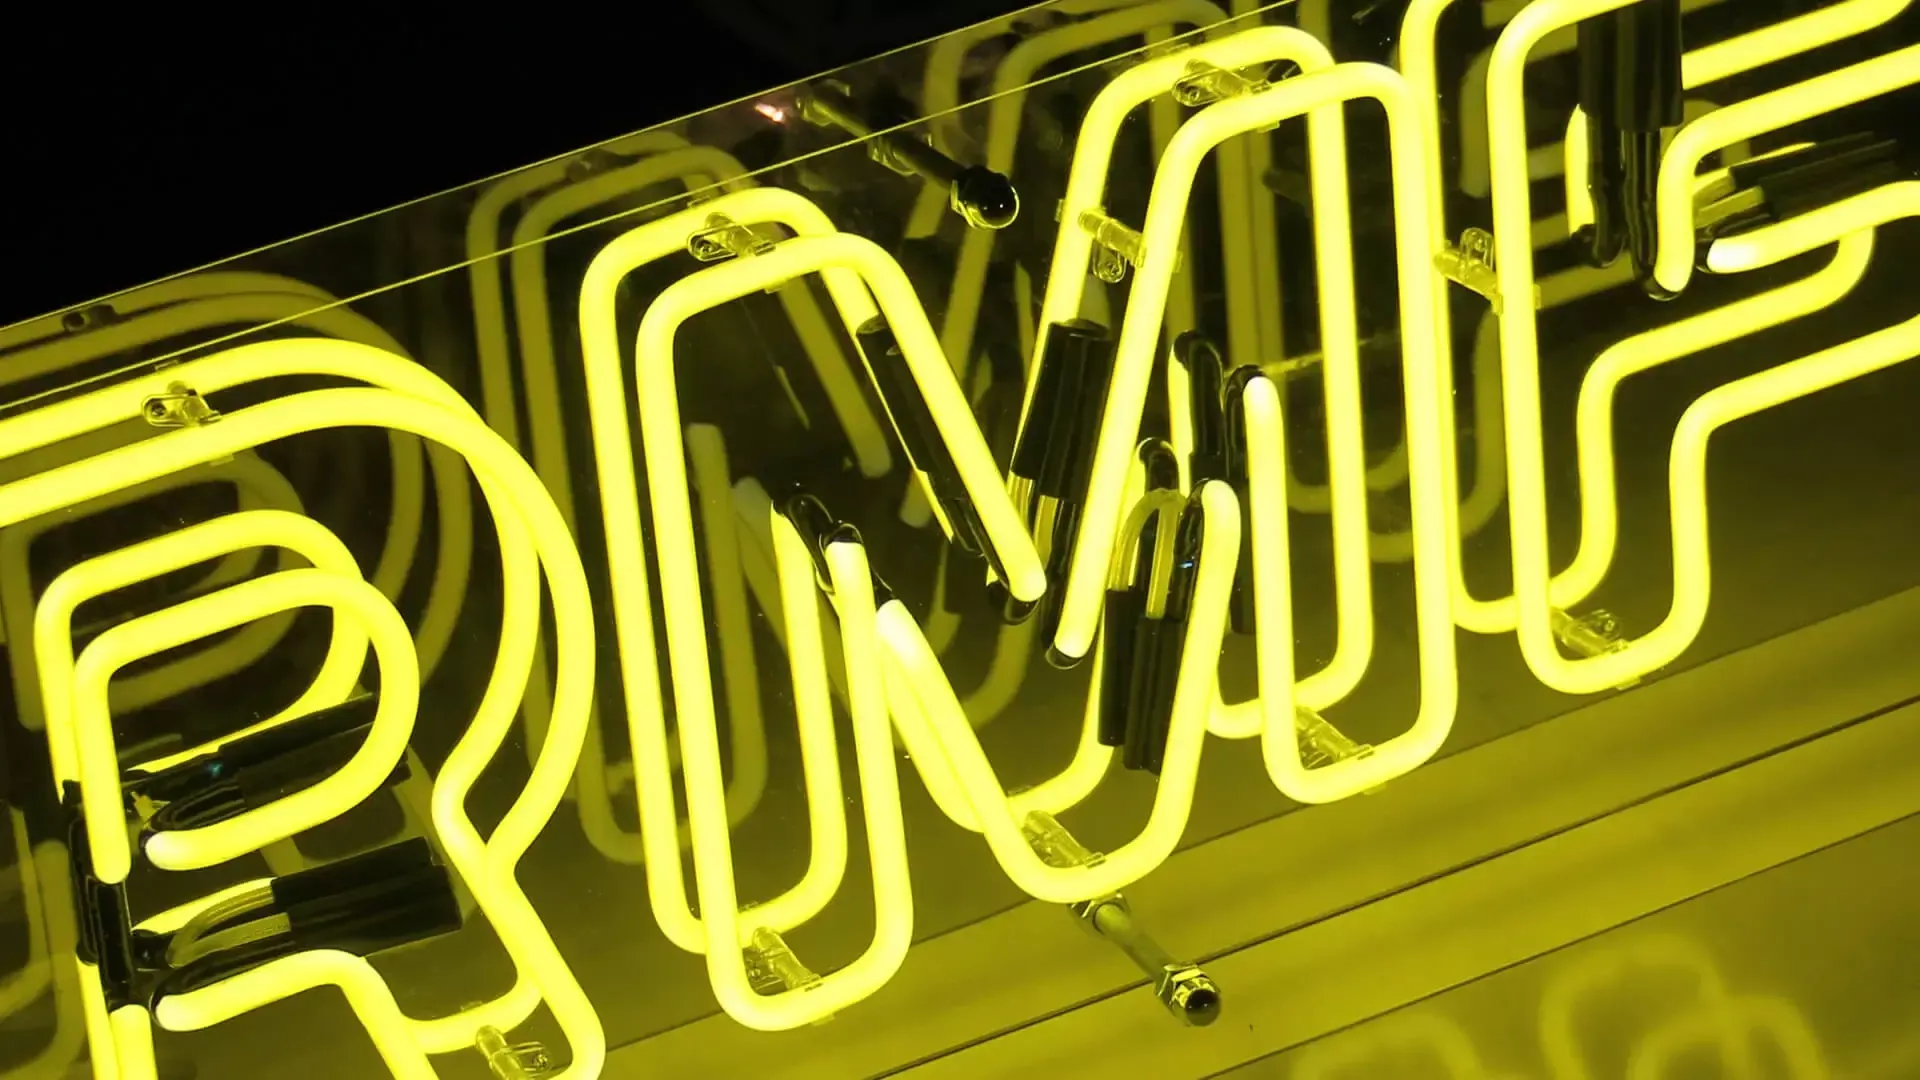 RMF - Neon giallo per Radio RMF, pubblicità al neon.